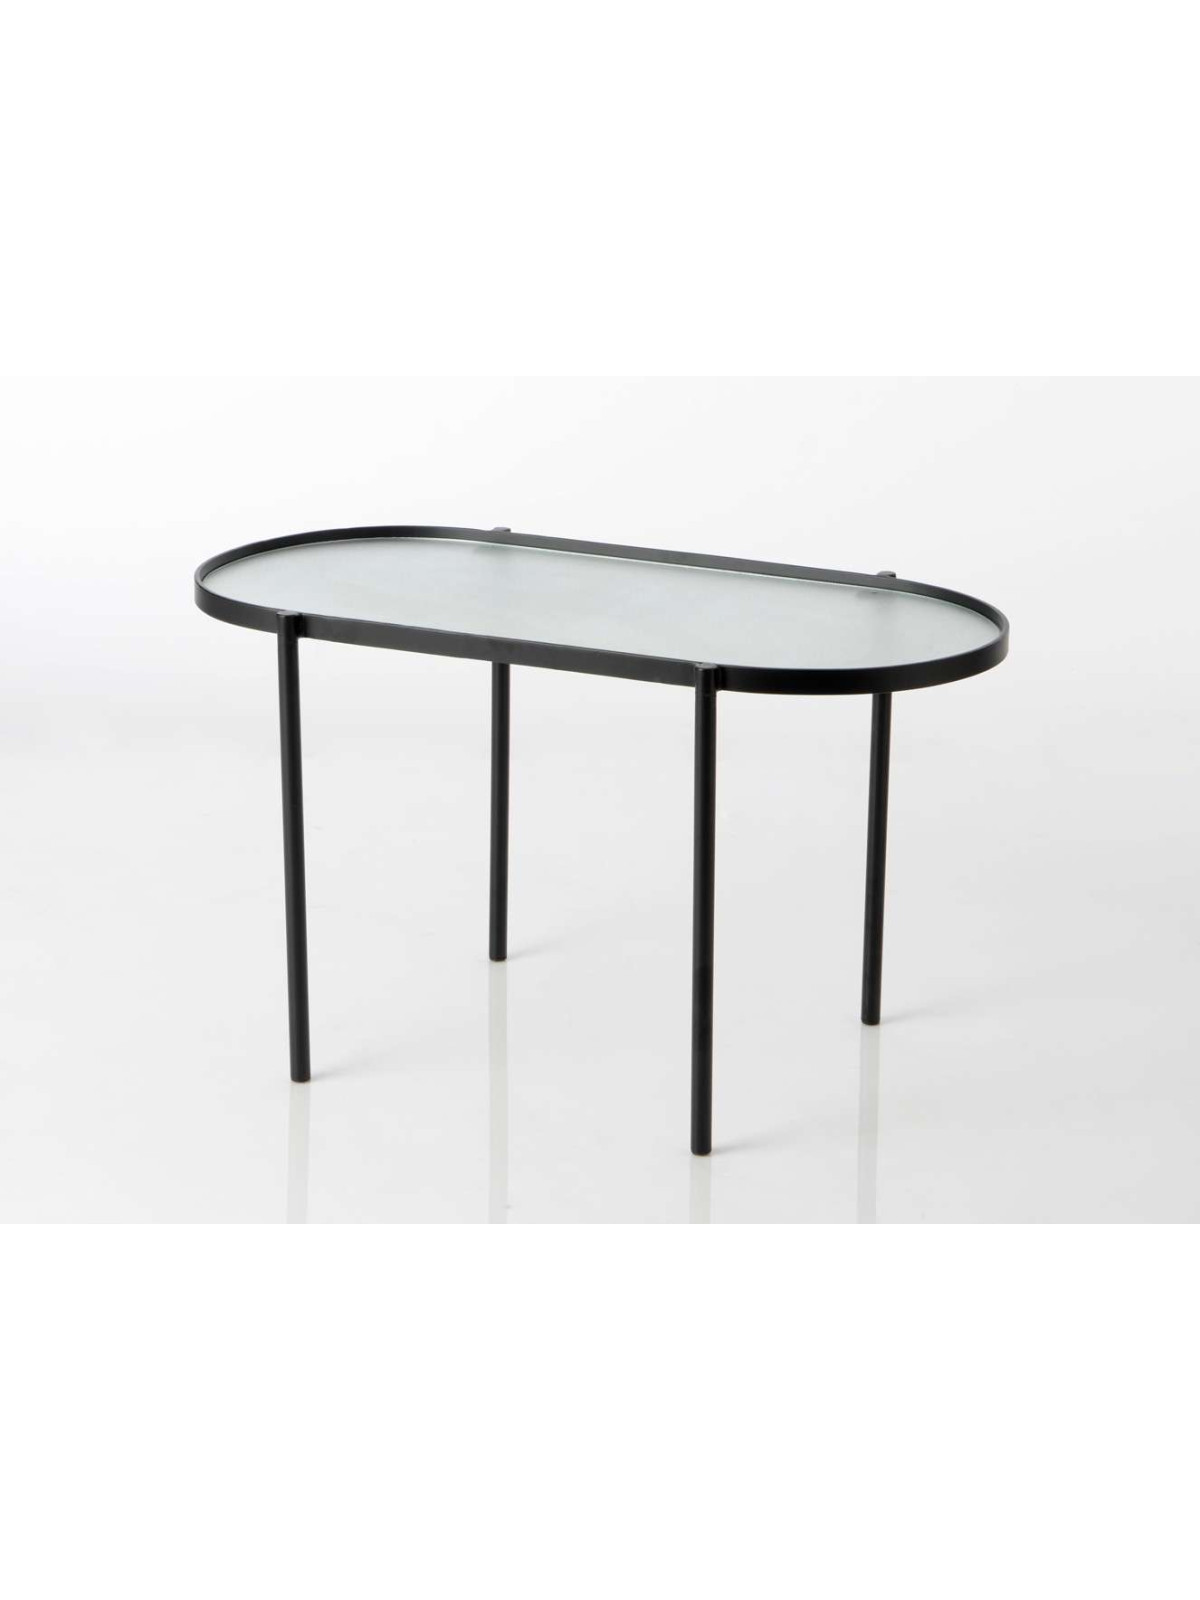 Petite table basse ovale en métal et verre